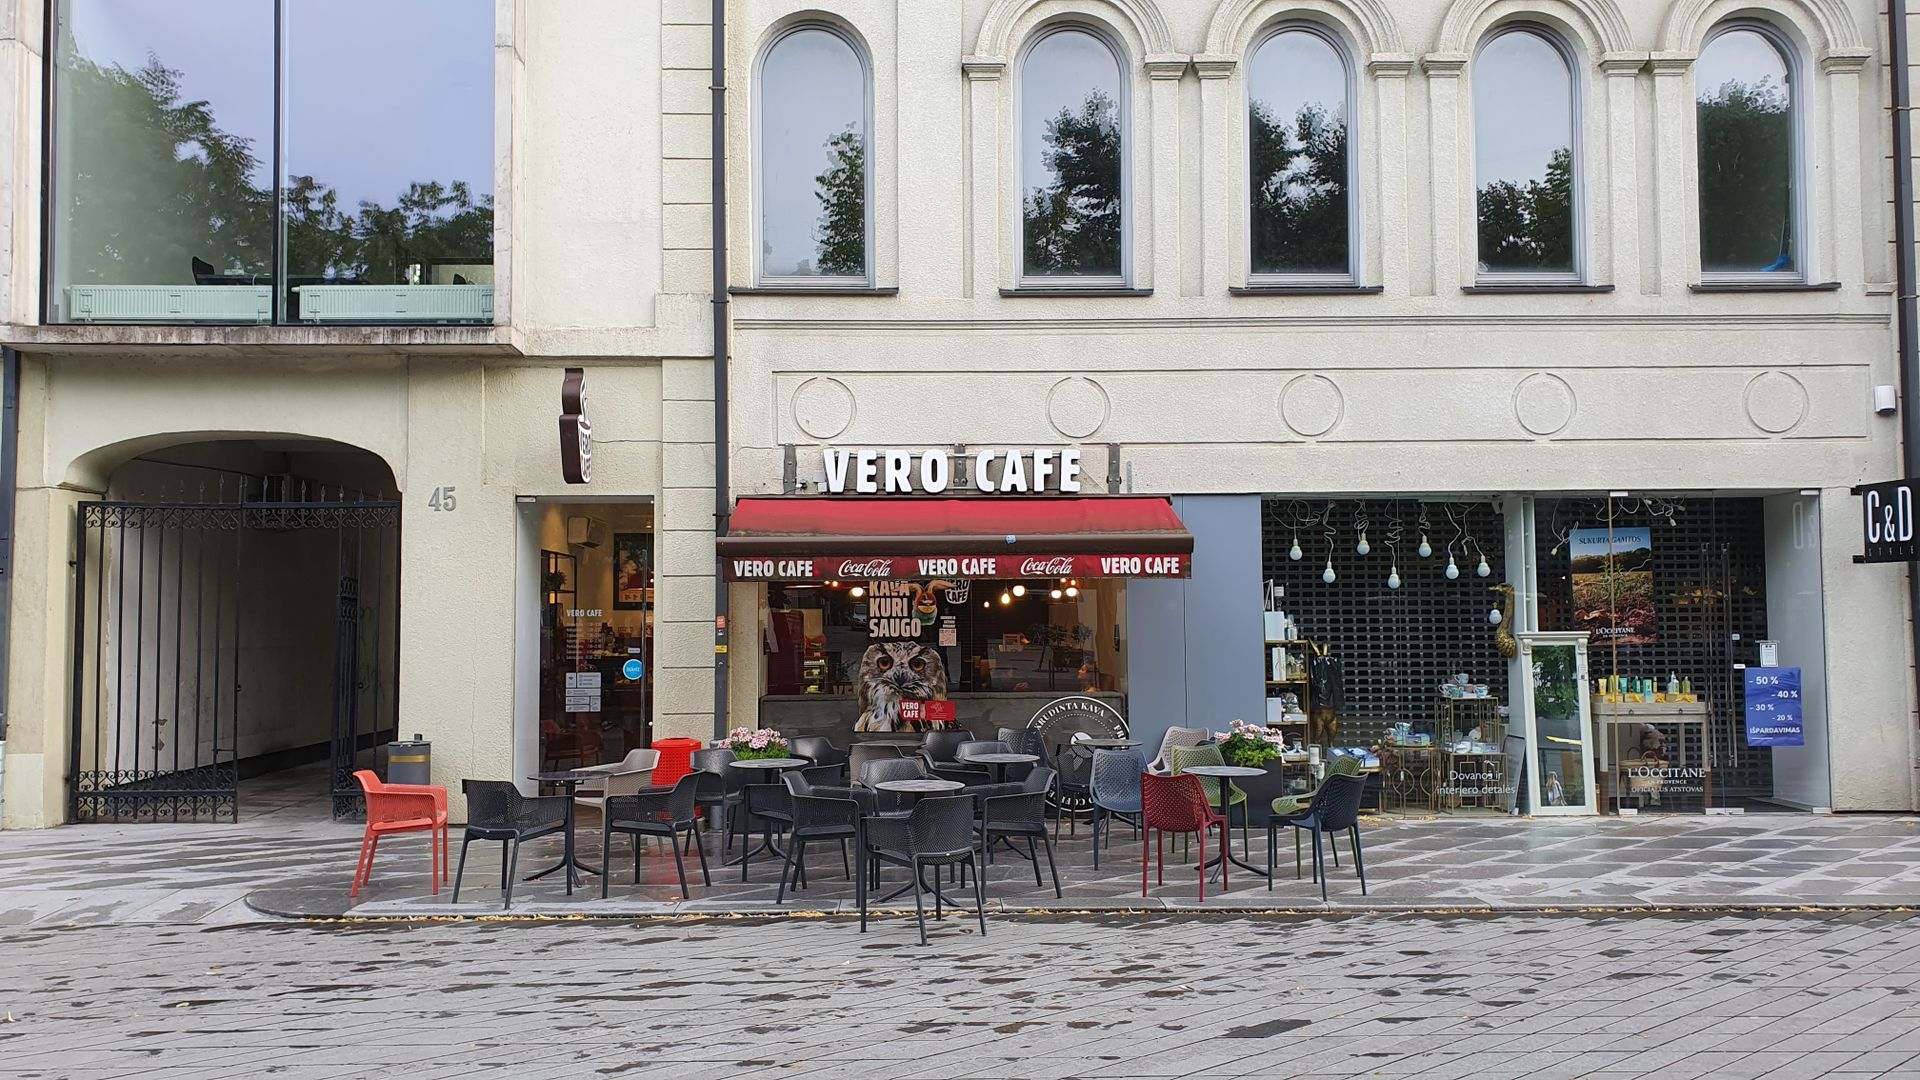 Vero Cafe